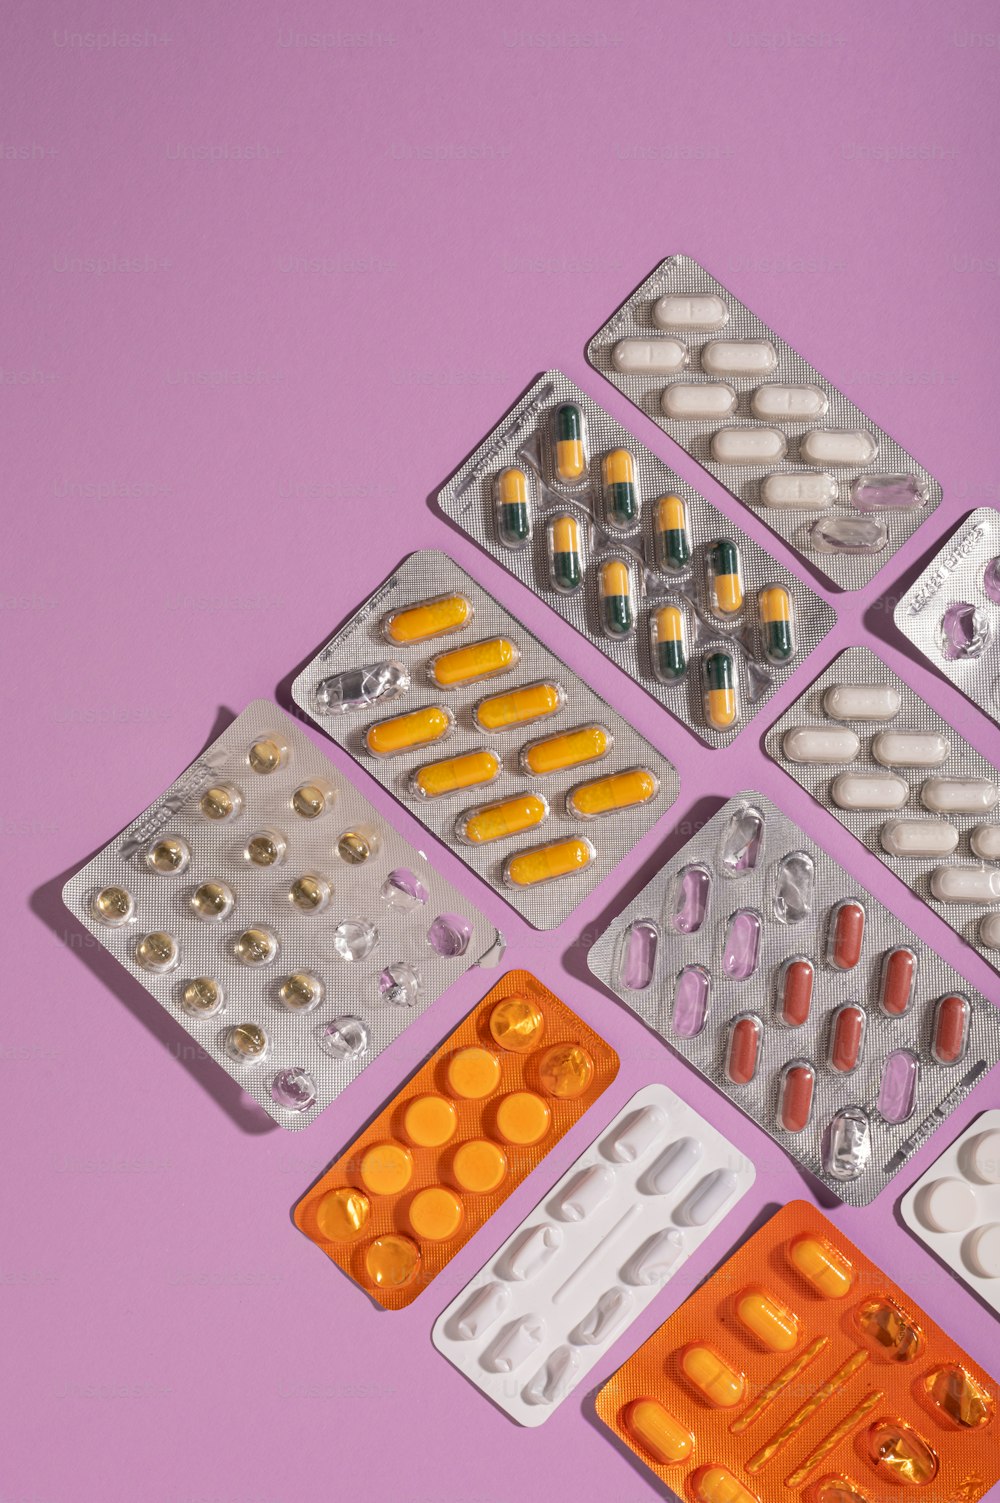 Eine Gruppe von Pillen und Tabletten auf violettem Hintergrund